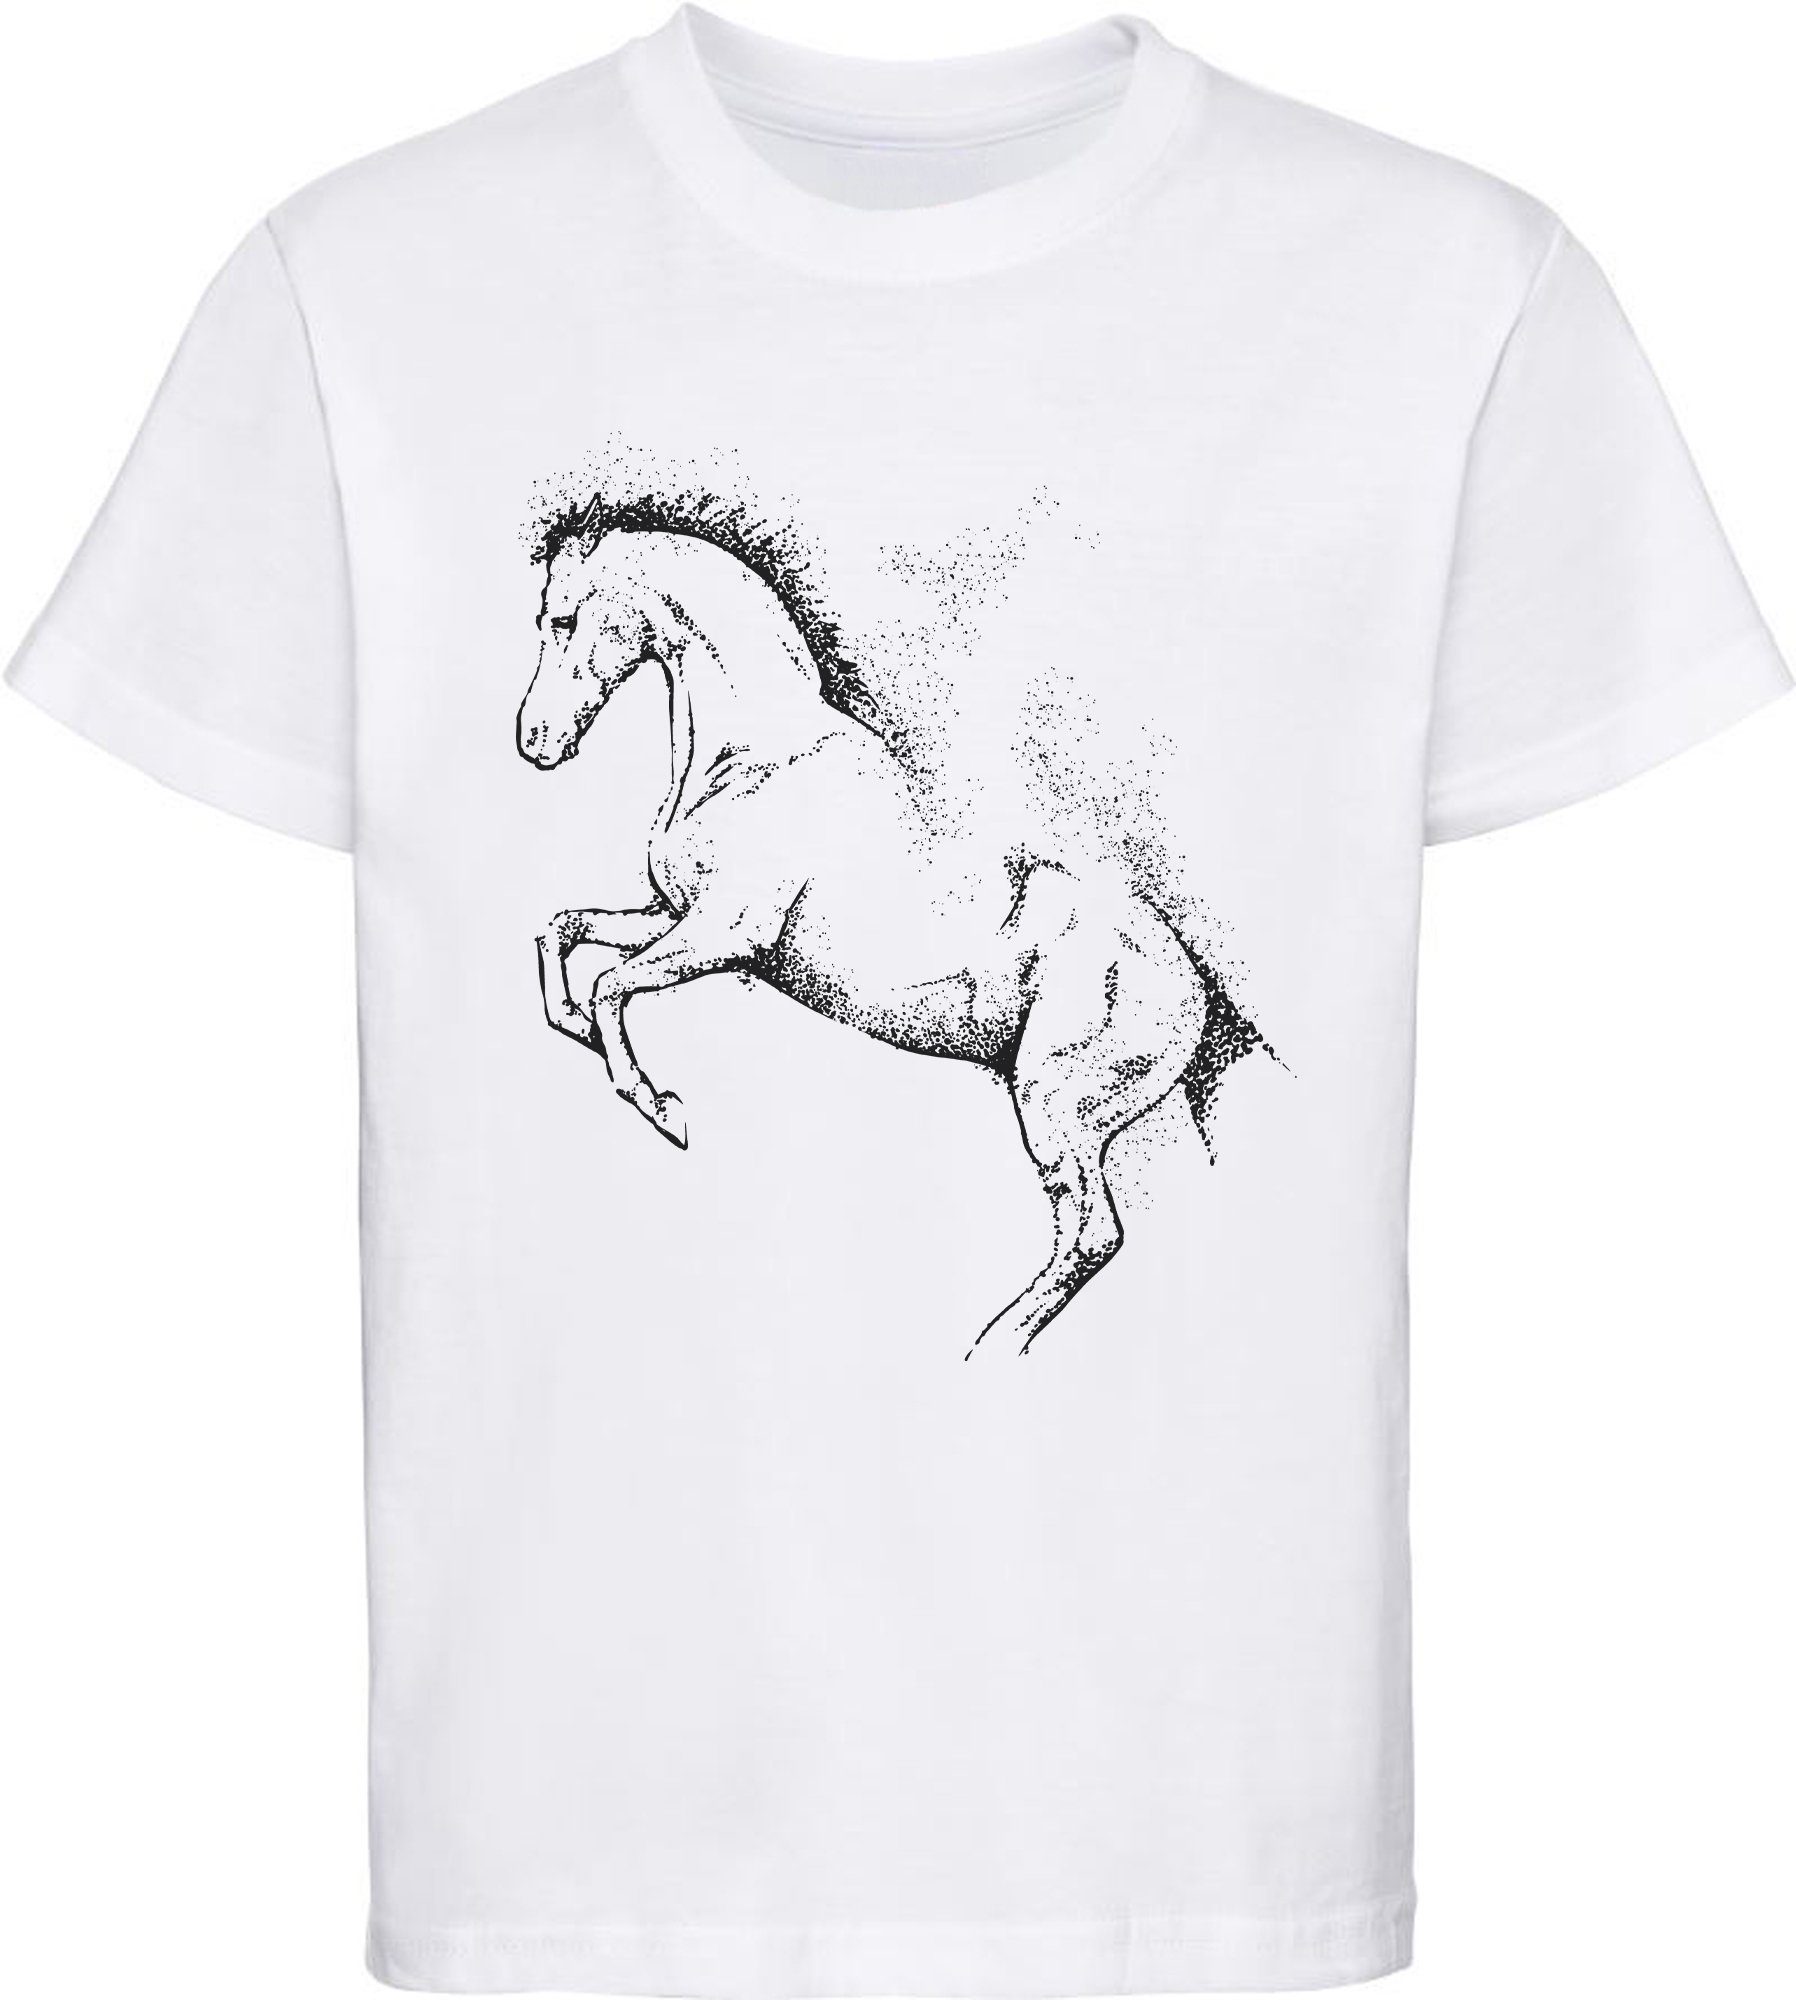 Baumwollshirt bedrucktes weiss i196 mit Kinder MyDesign24 Print-Shirt T-Shirt Gepunktete Mädchen Aufdruck, Silhouette Pferde -